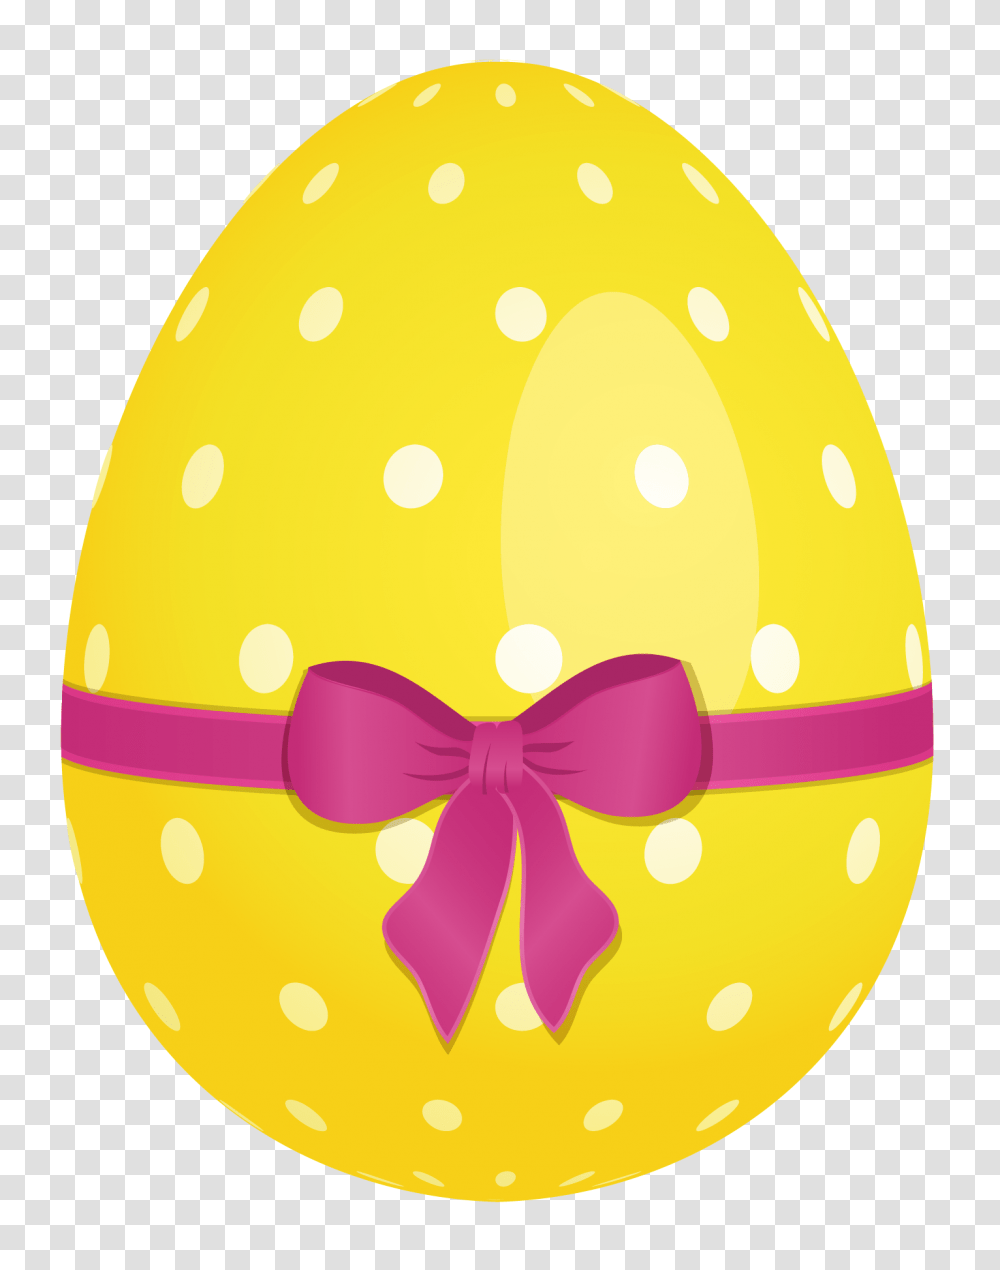 Easter Eggs Clip Art, Food, Helmet, Apparel Transparent Png